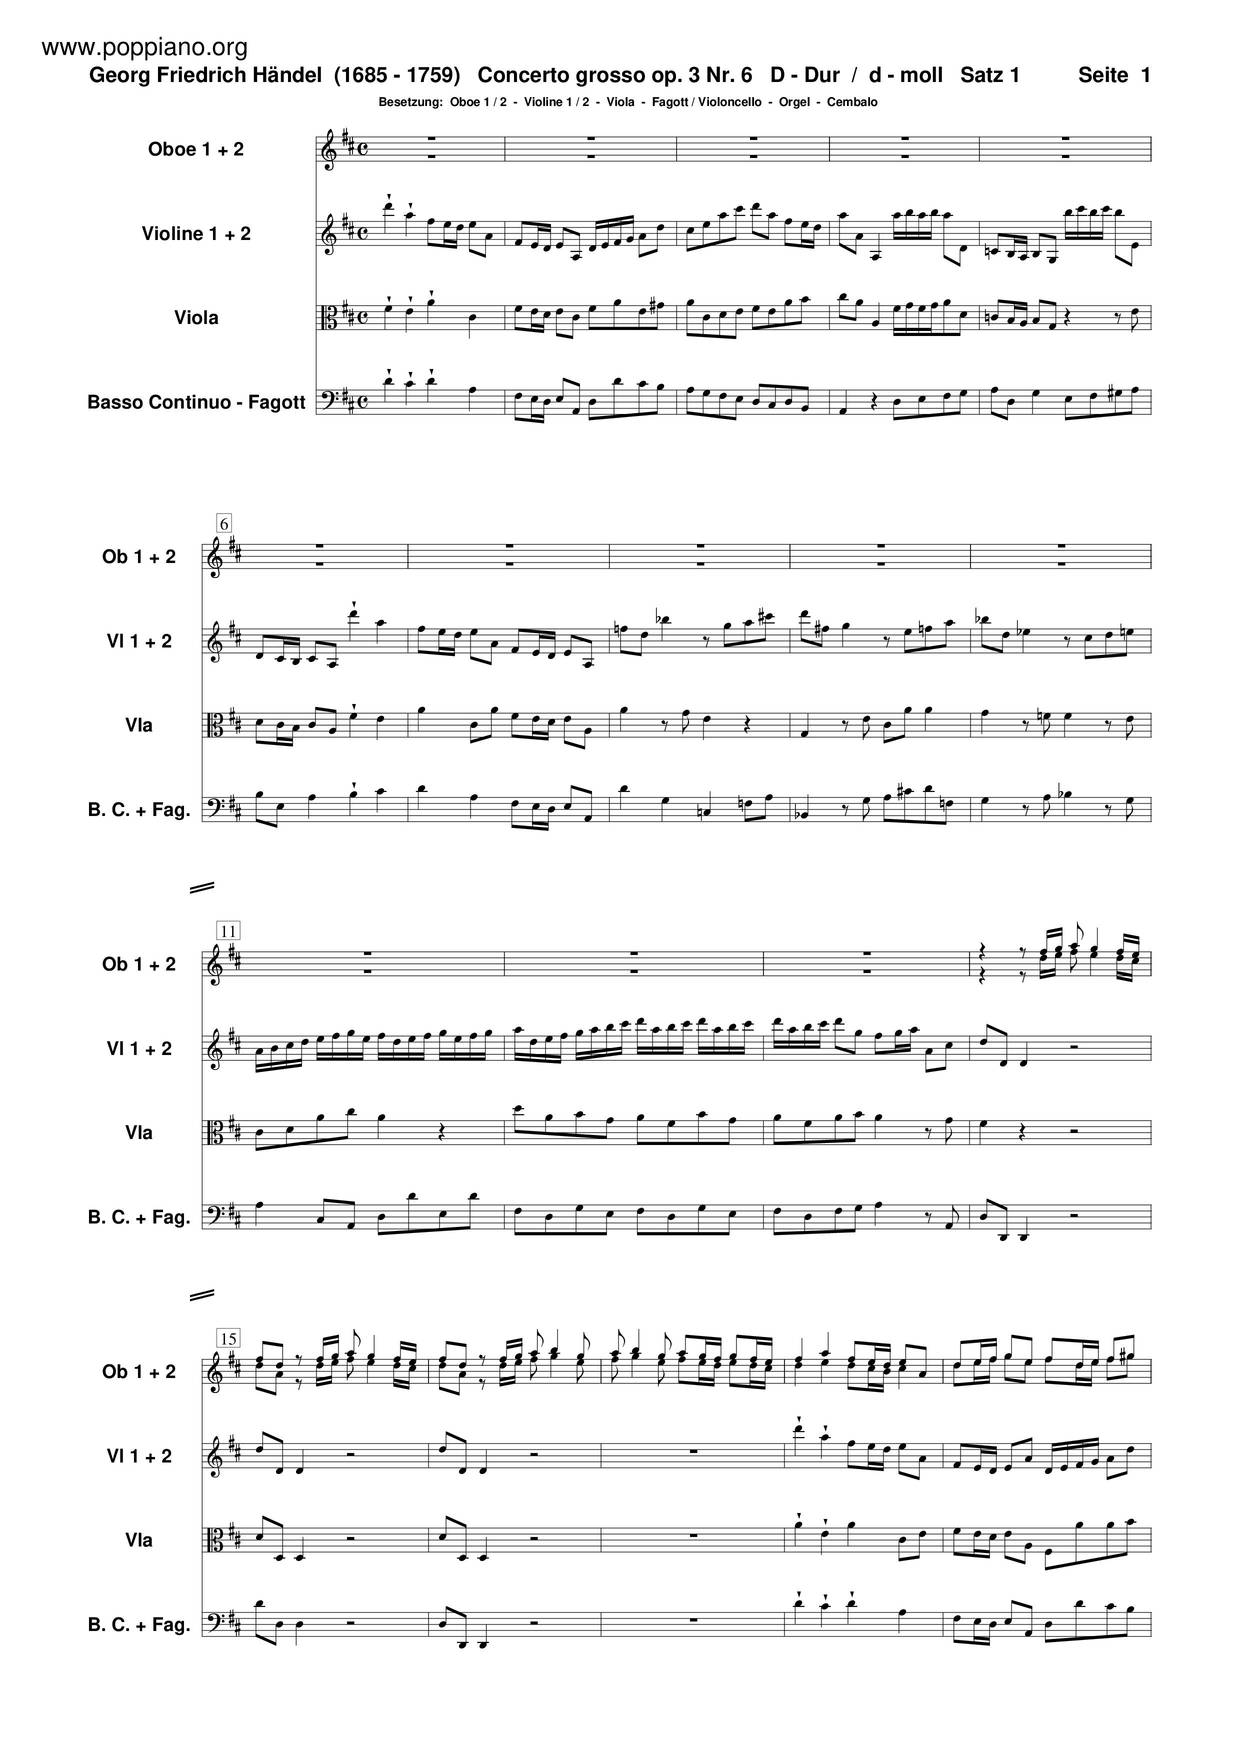 Concerto Grosso In D Major, HWV 317 Score